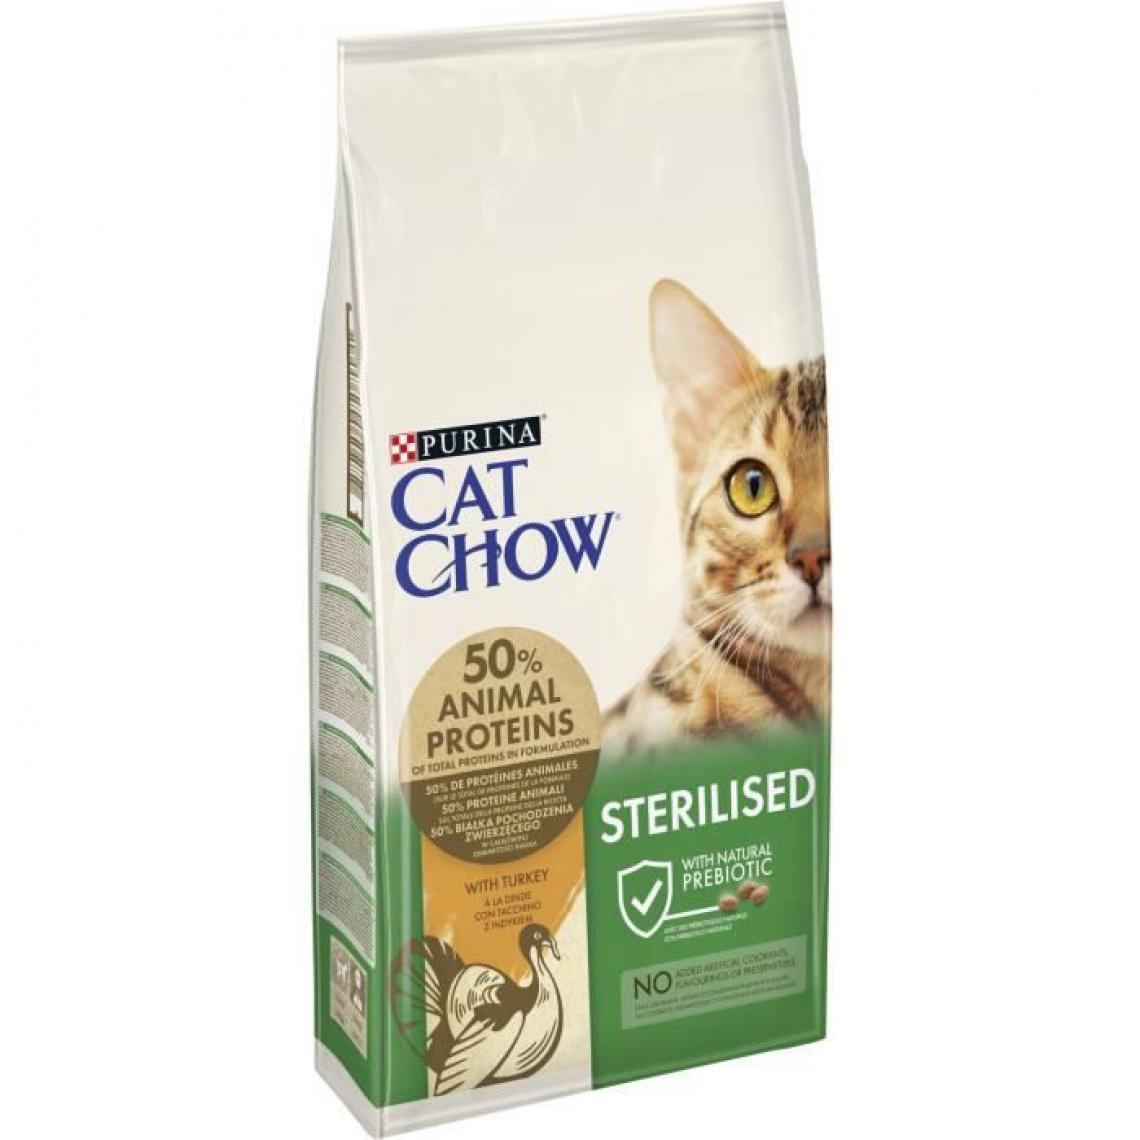 CAT CHOW - PURINA CAT CHOW Croquettes pour chat adulte stérilisé - Riche en dinde - 10 kg - Croquettes pour chien